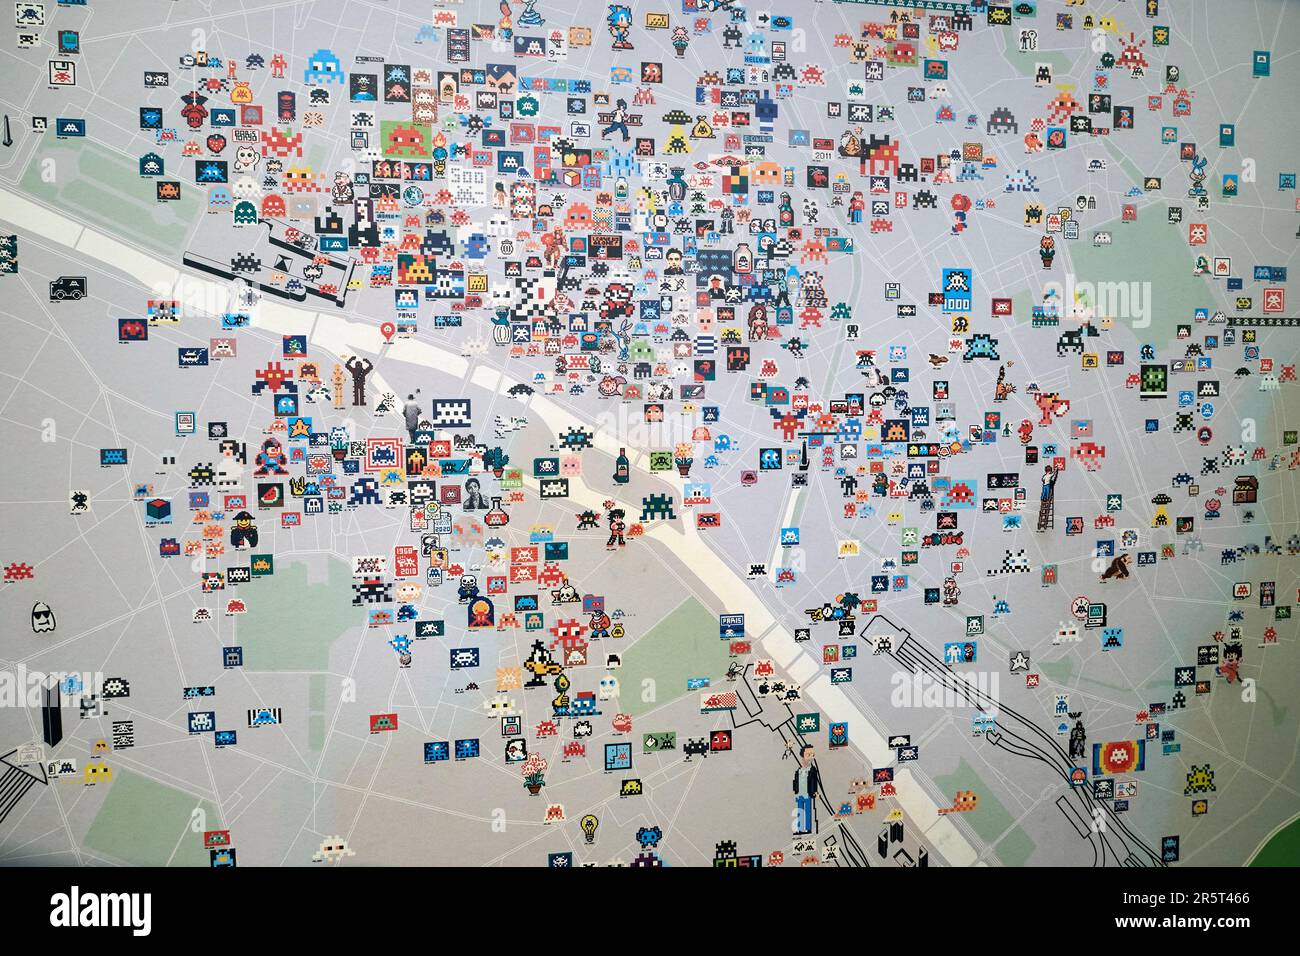 Francia, Parigi, expo capitale(s), 60 anni di arte urbana a Parigi, mappa di Parigi dai mosaici degli Space Invaders dell'artista Invader Foto Stock